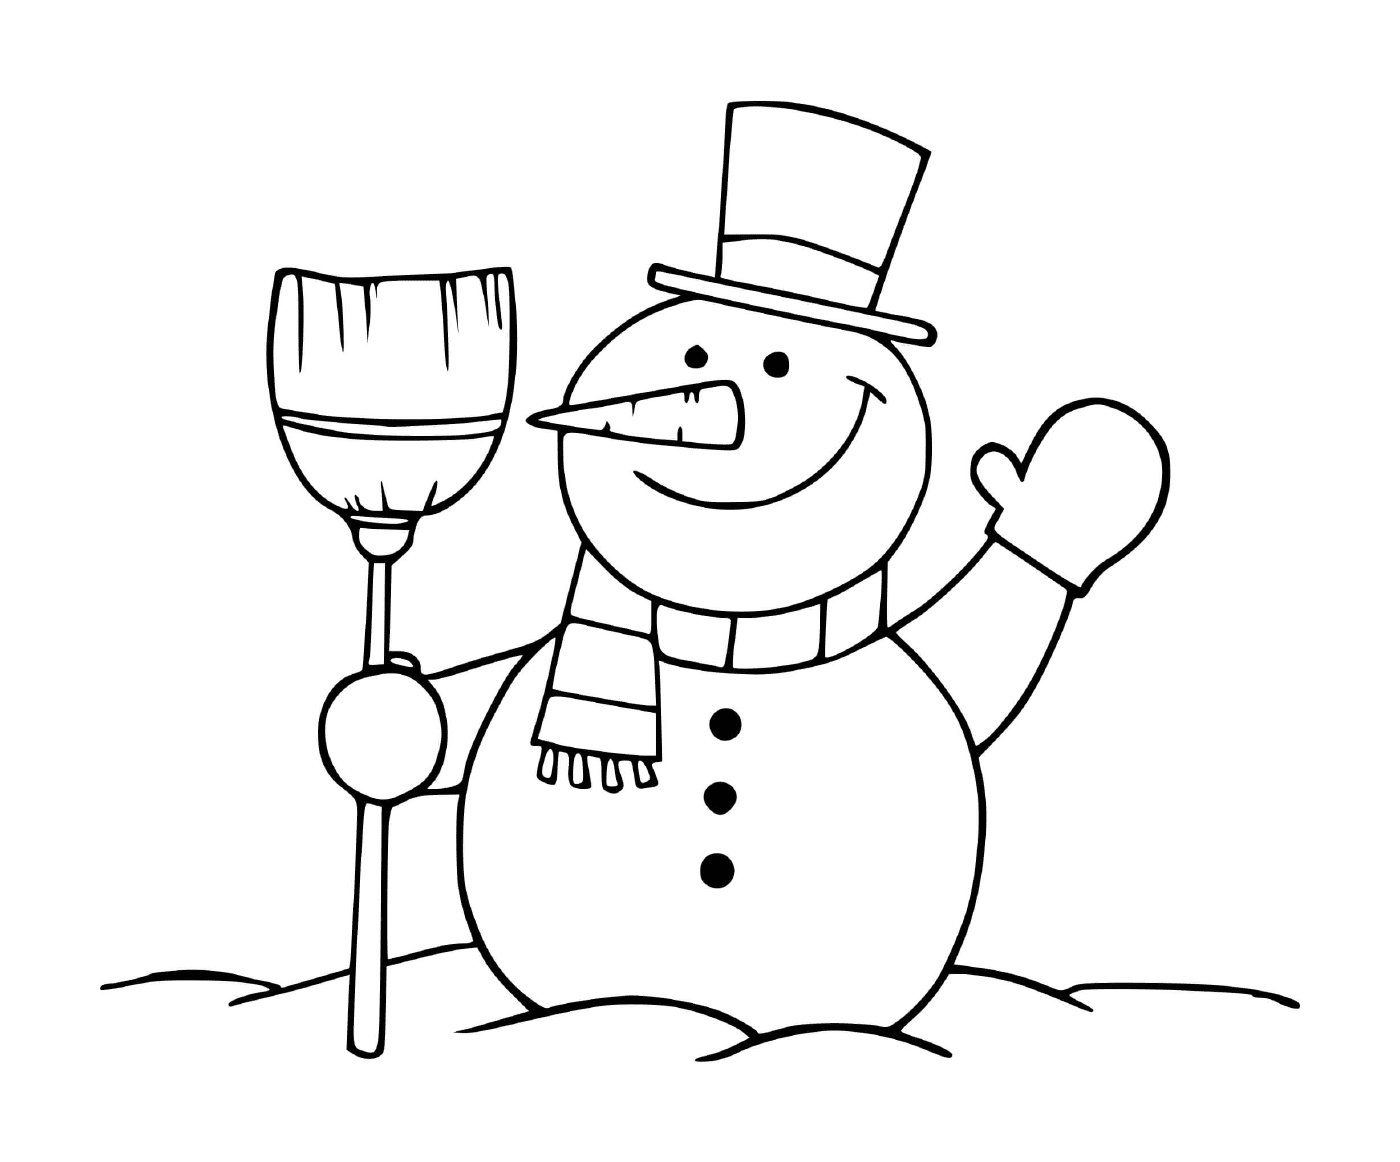  Snowman artist 